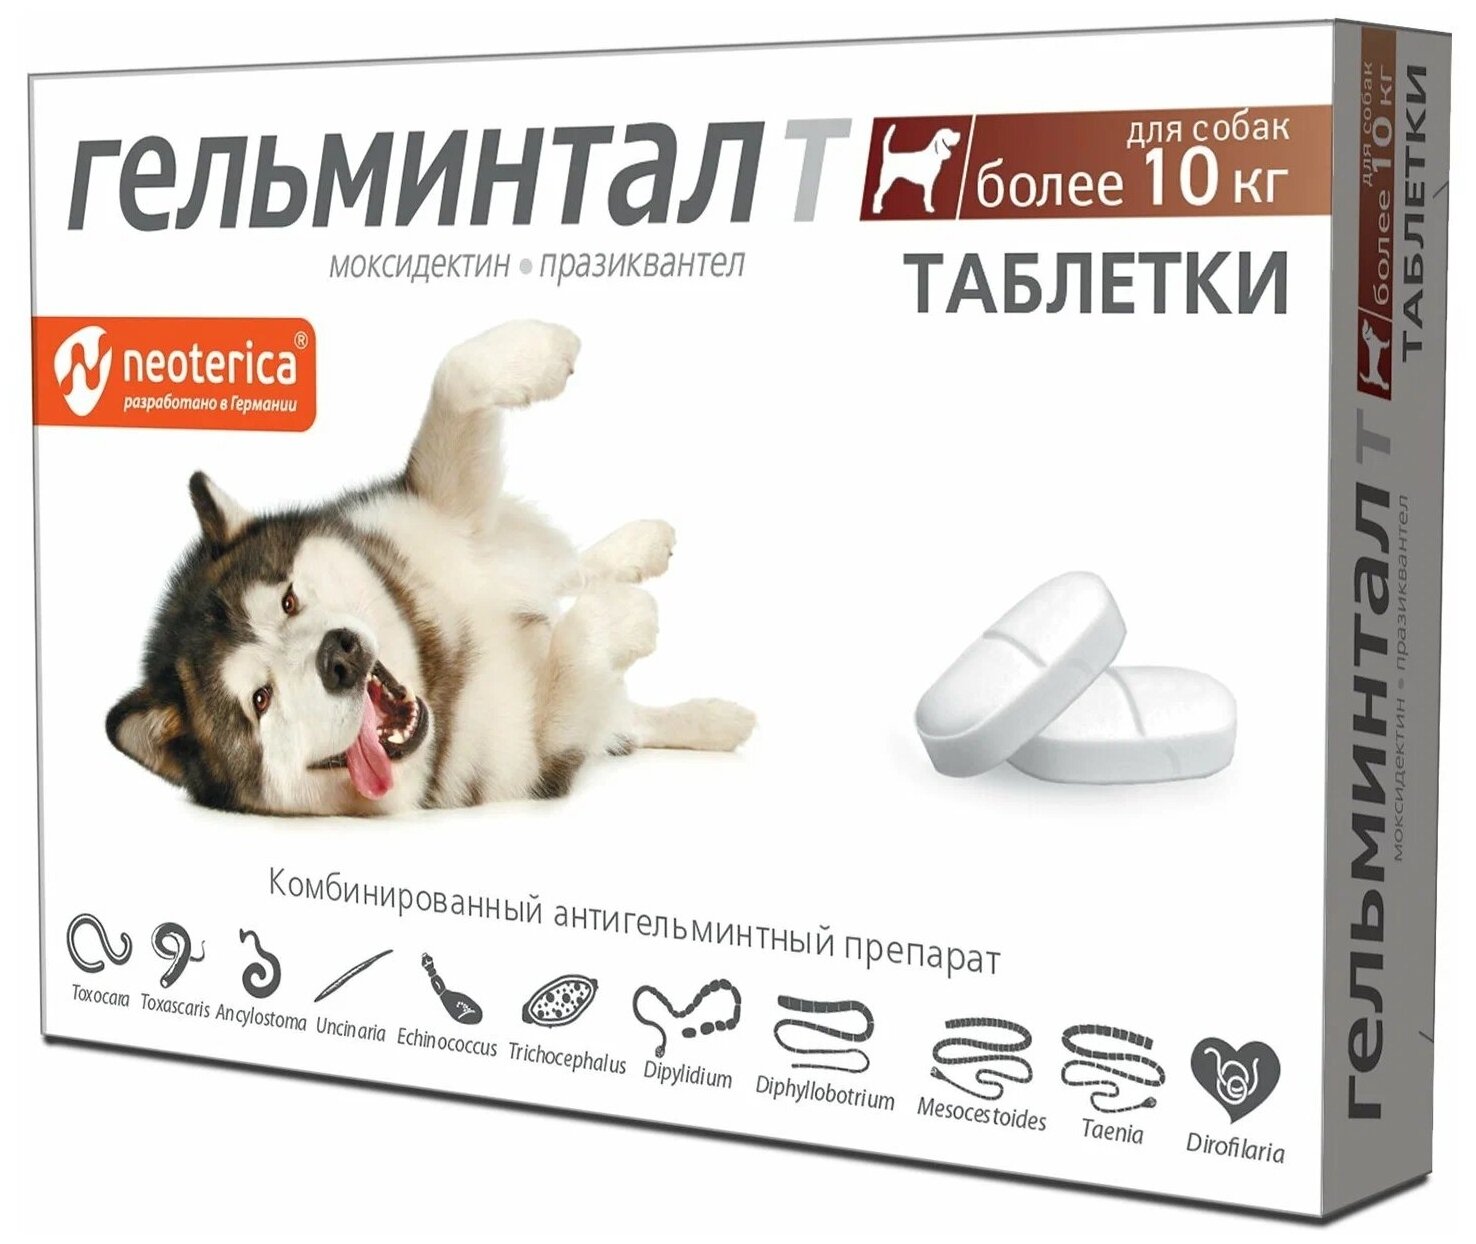 Гельминтал Т антигельминтик для собак весом от 10 кг уп. 2 таблетки (1 уп)